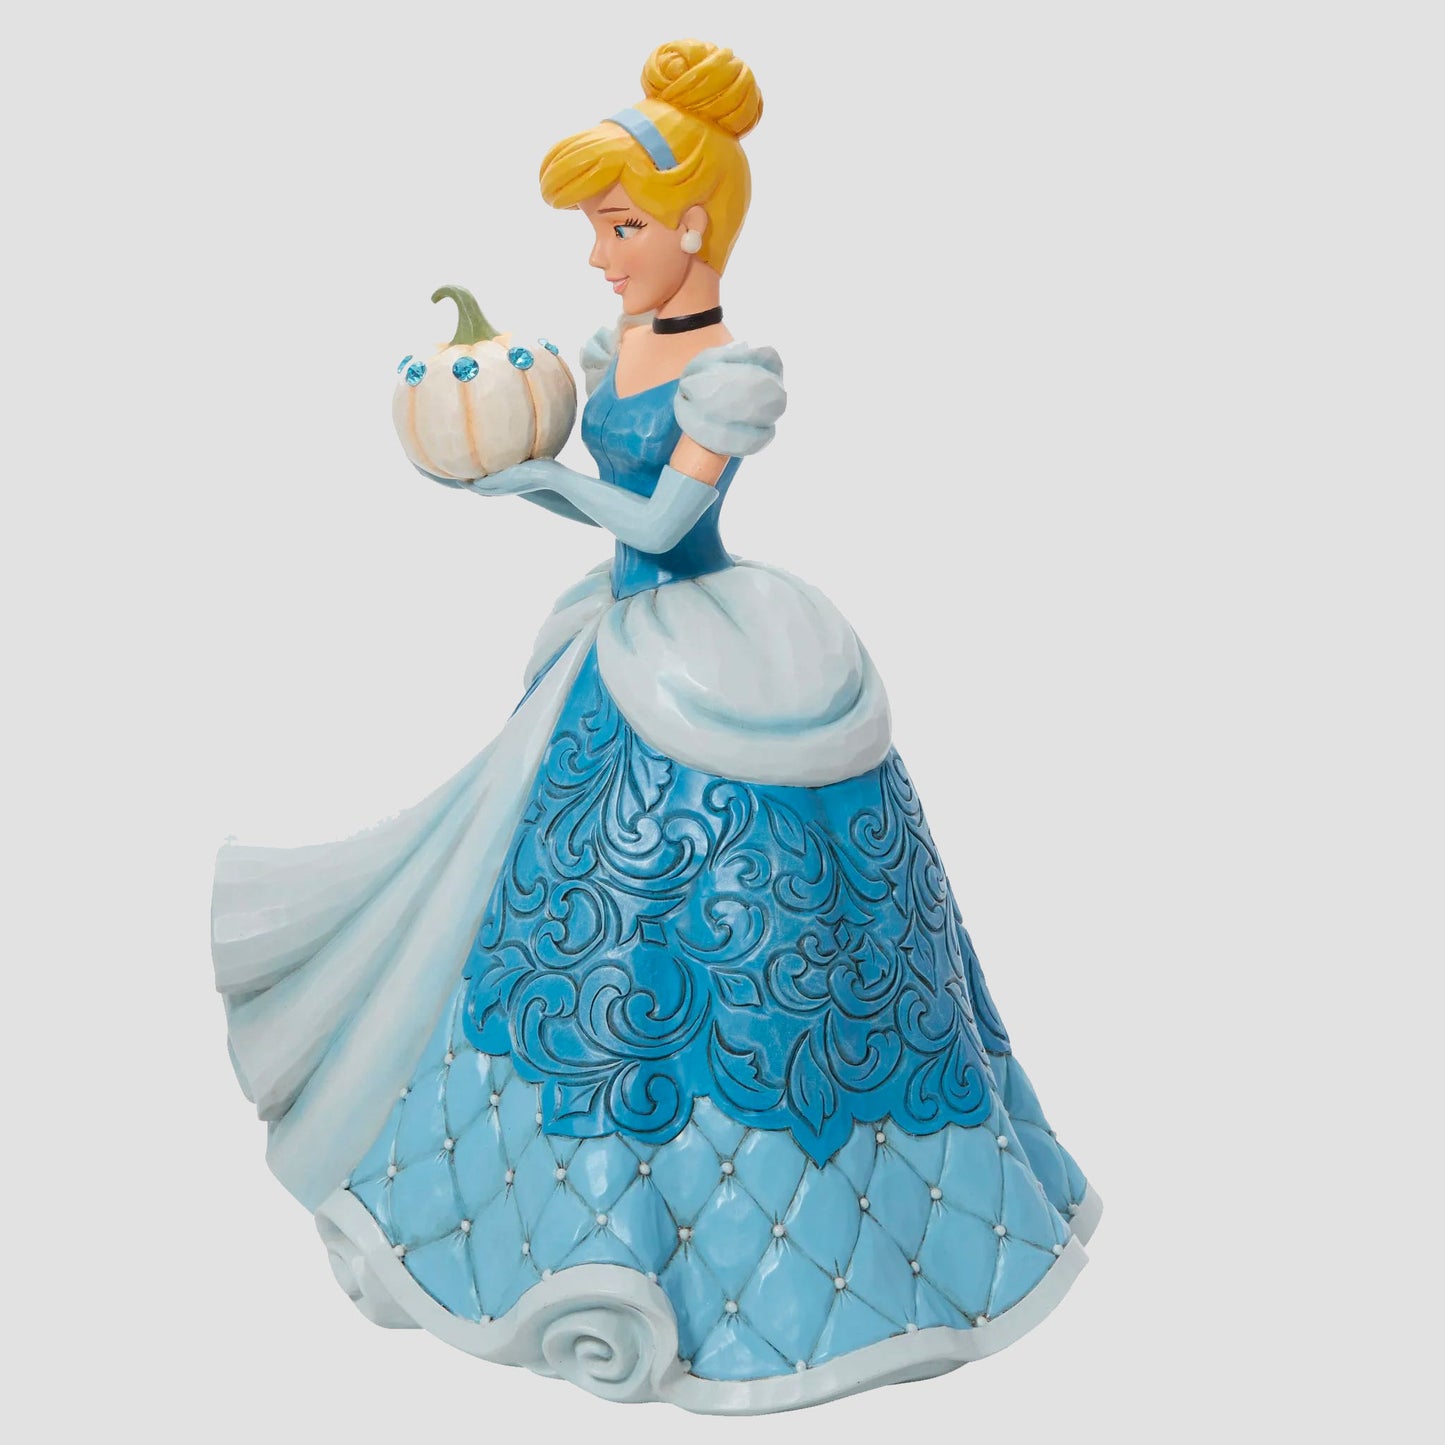 Cinderella "The Iconic Pumpkin" (Cinderella) Deluxe Disney Traditions Statue